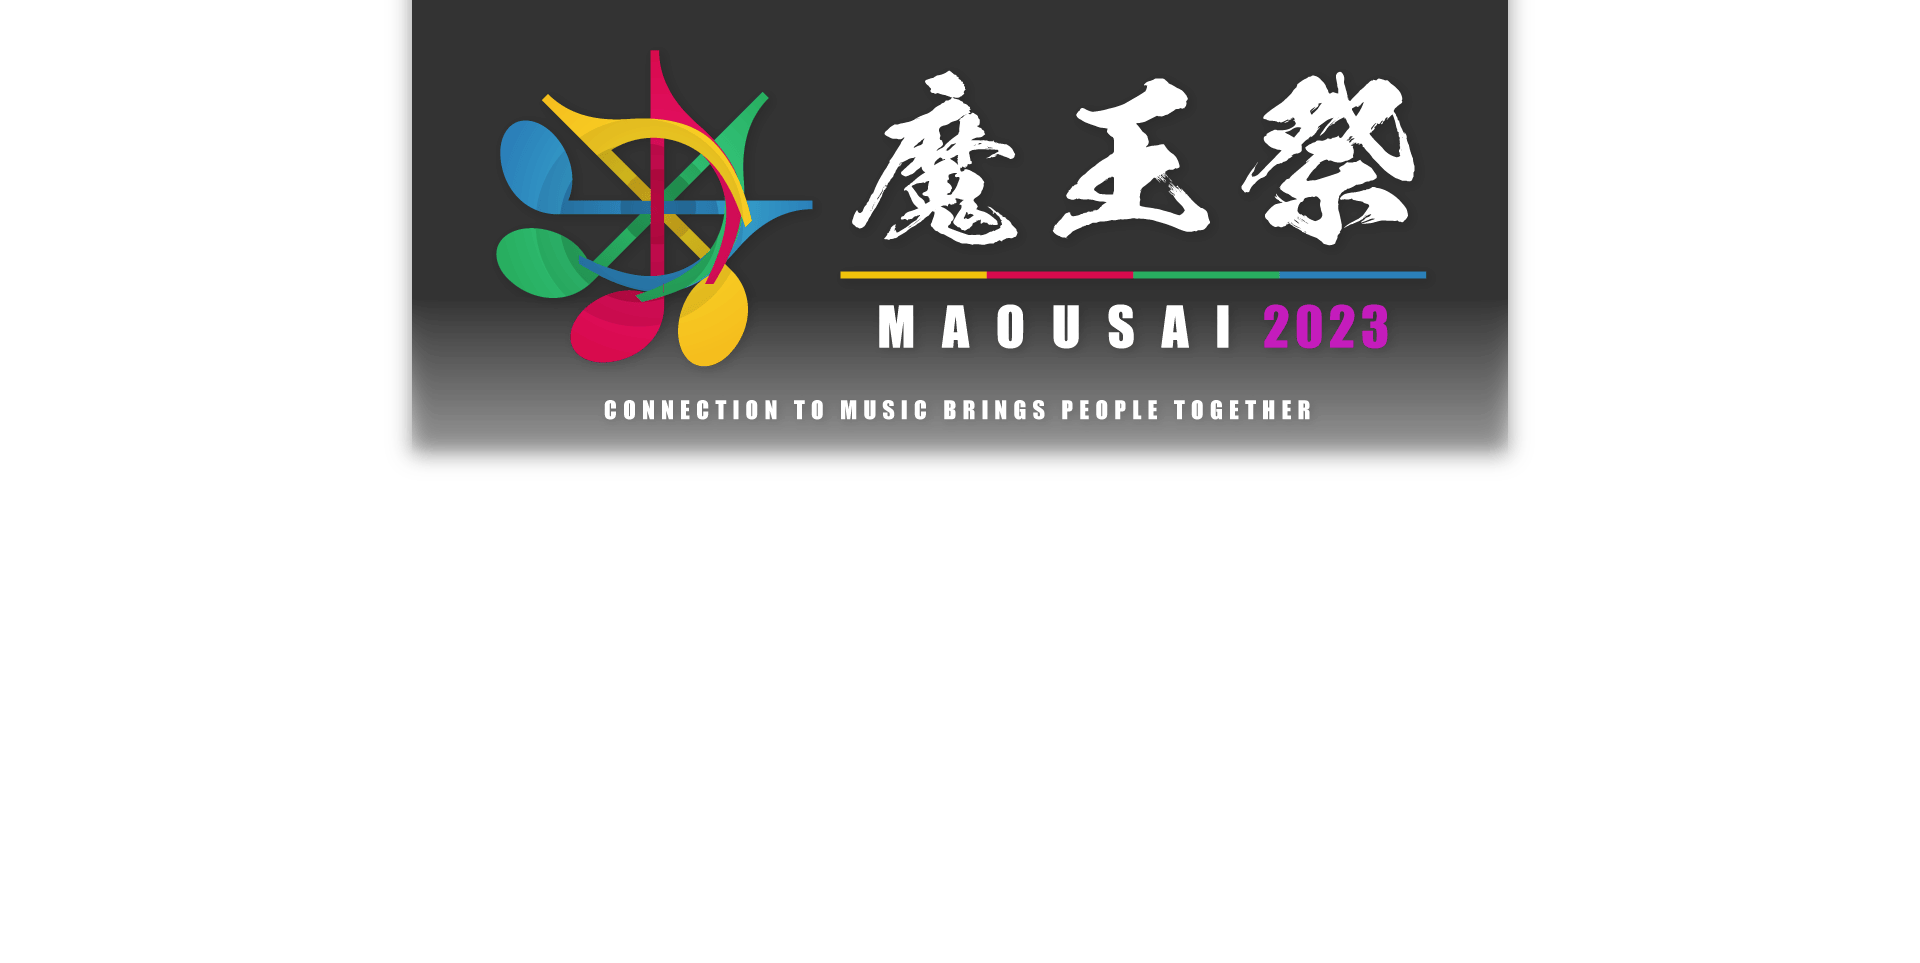 魔王祭2023ロゴ